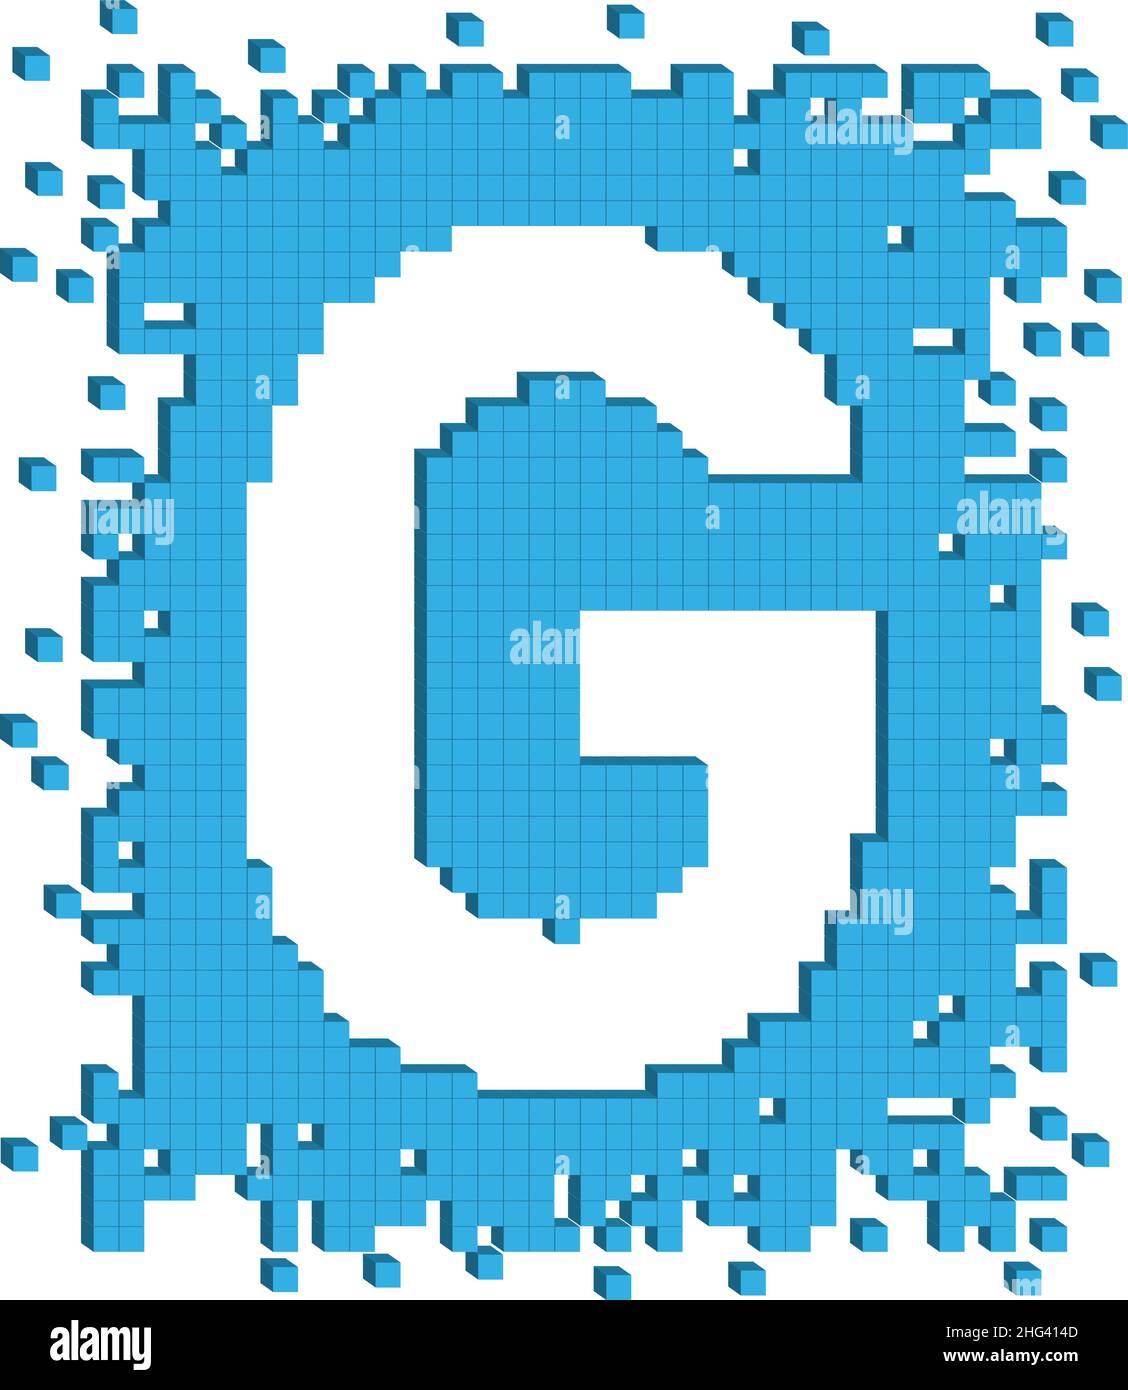 Vecteur lettre G entourée de nombreux petits cubes de couleur bleue Illustration de Vecteur